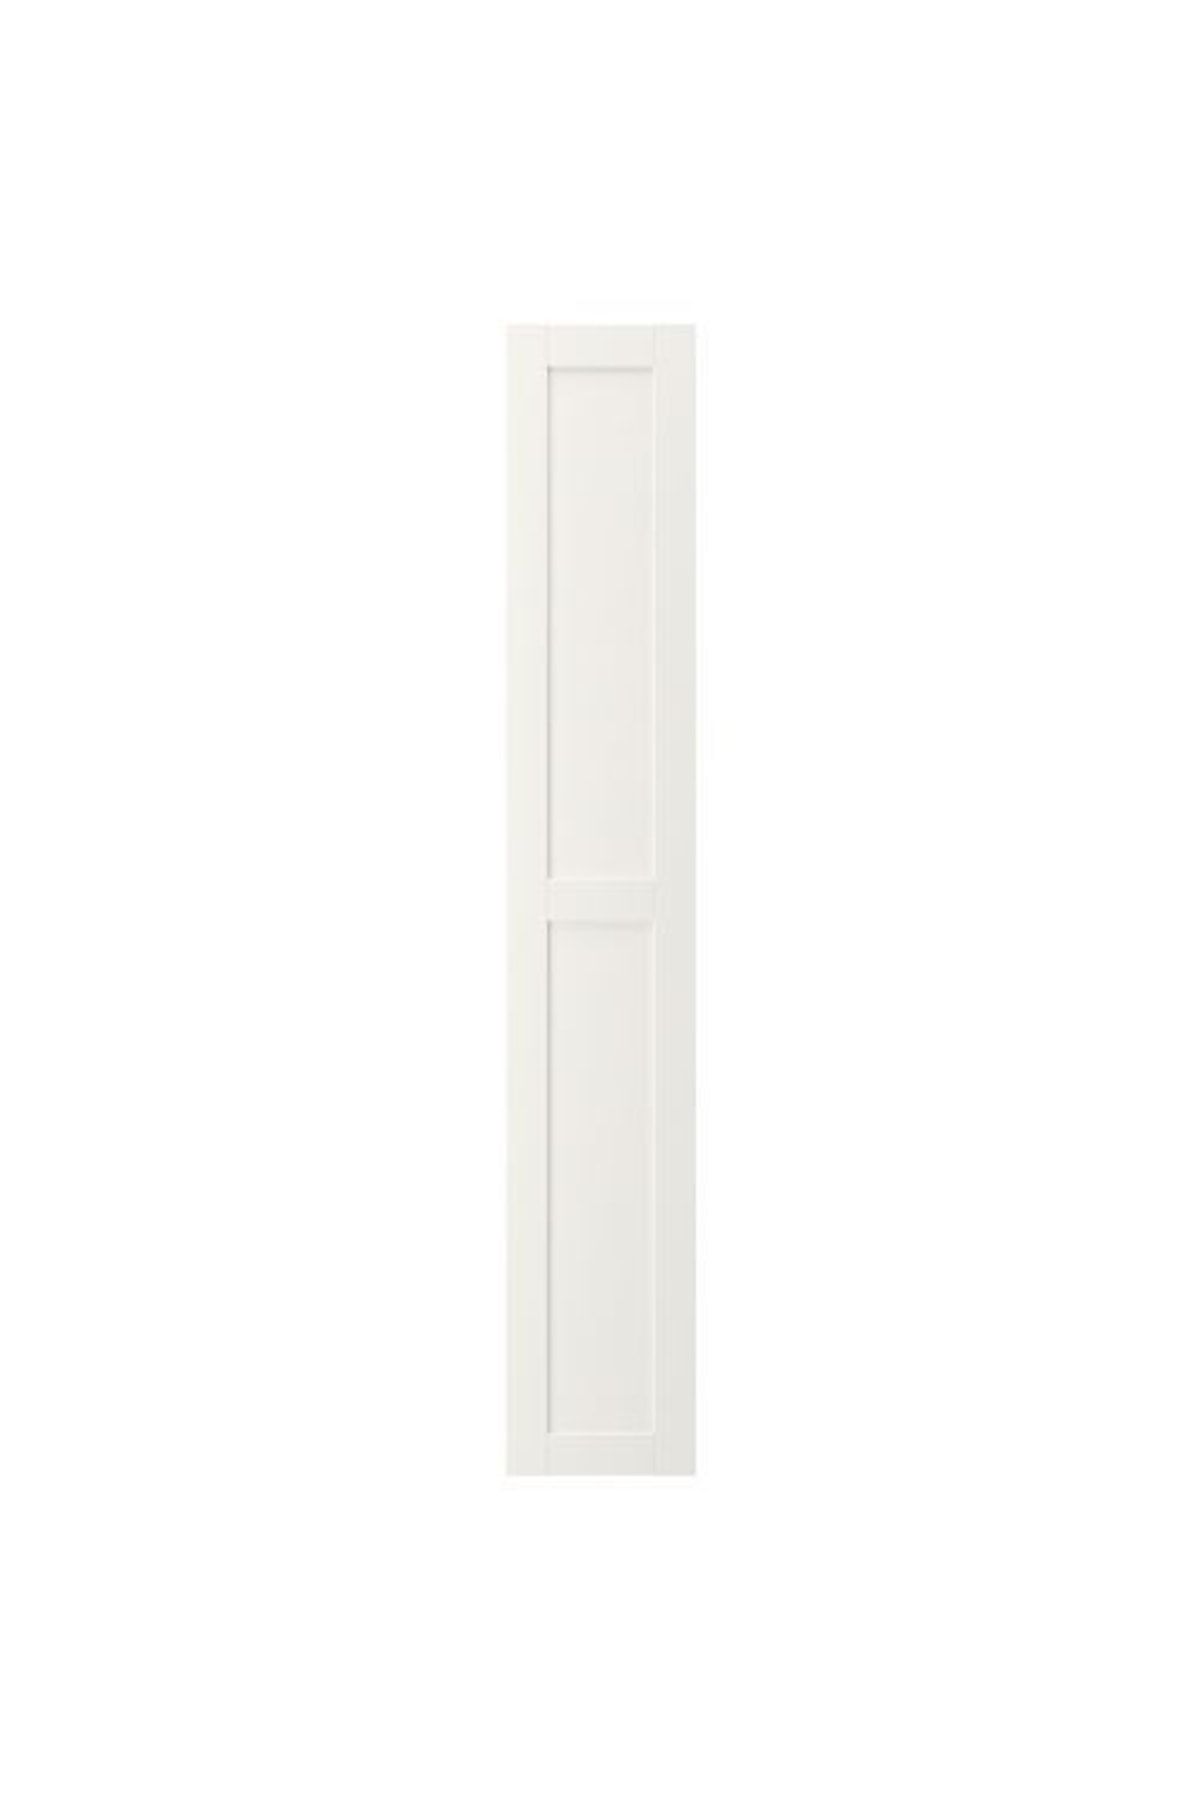 IKEA Enhet, Kapak, 30x180 Cm, Beyaz